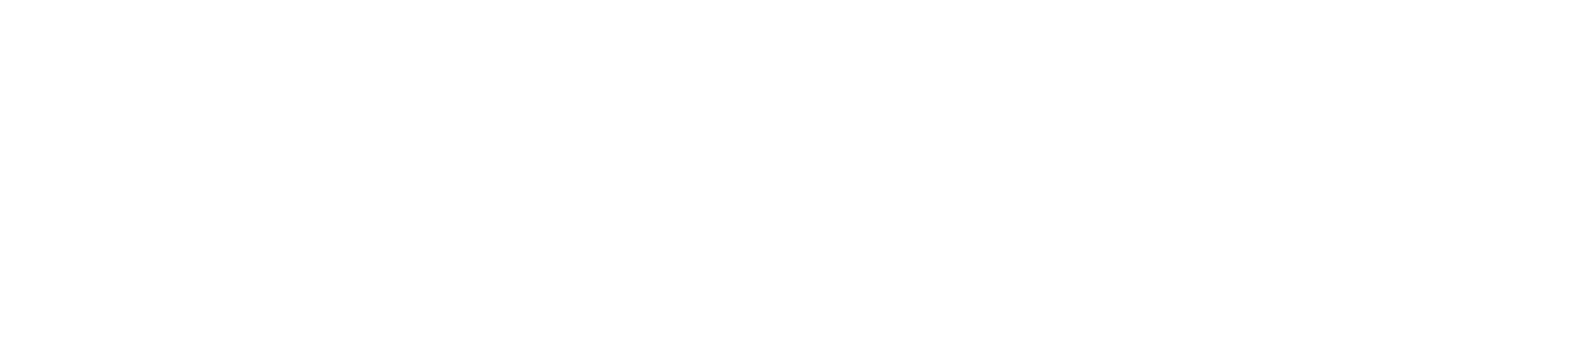 Aston Martin
 logo pour fonds sombres (PNG transparent)